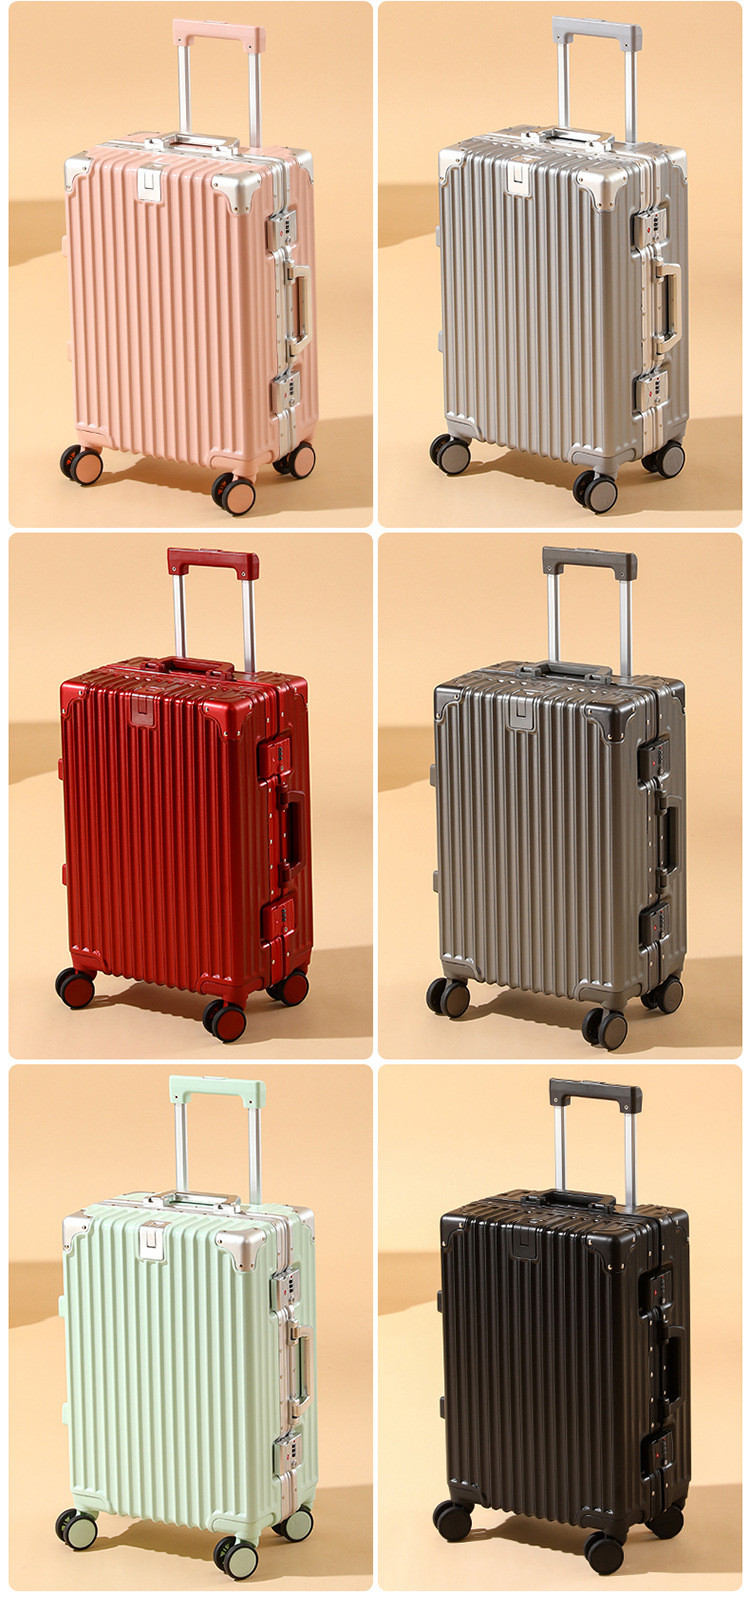 新益美 行李箱铝合金万向轮登机箱铝框拉杆箱20寸旅行密码箱